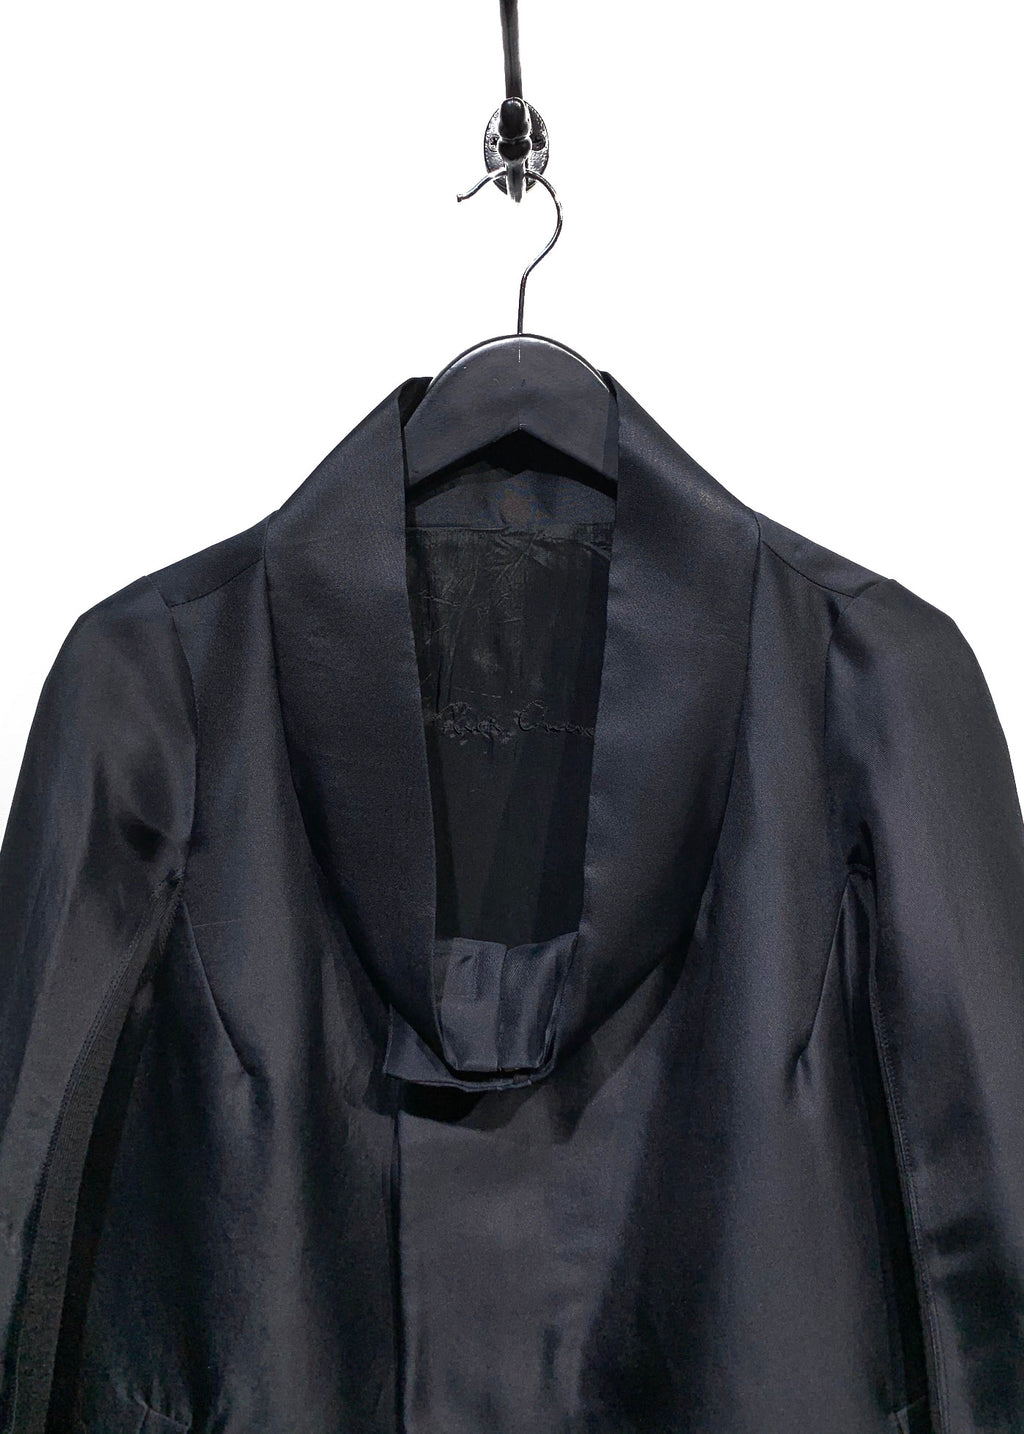 Rick Owens Black Silk Jacket with Rib Knit Inserts